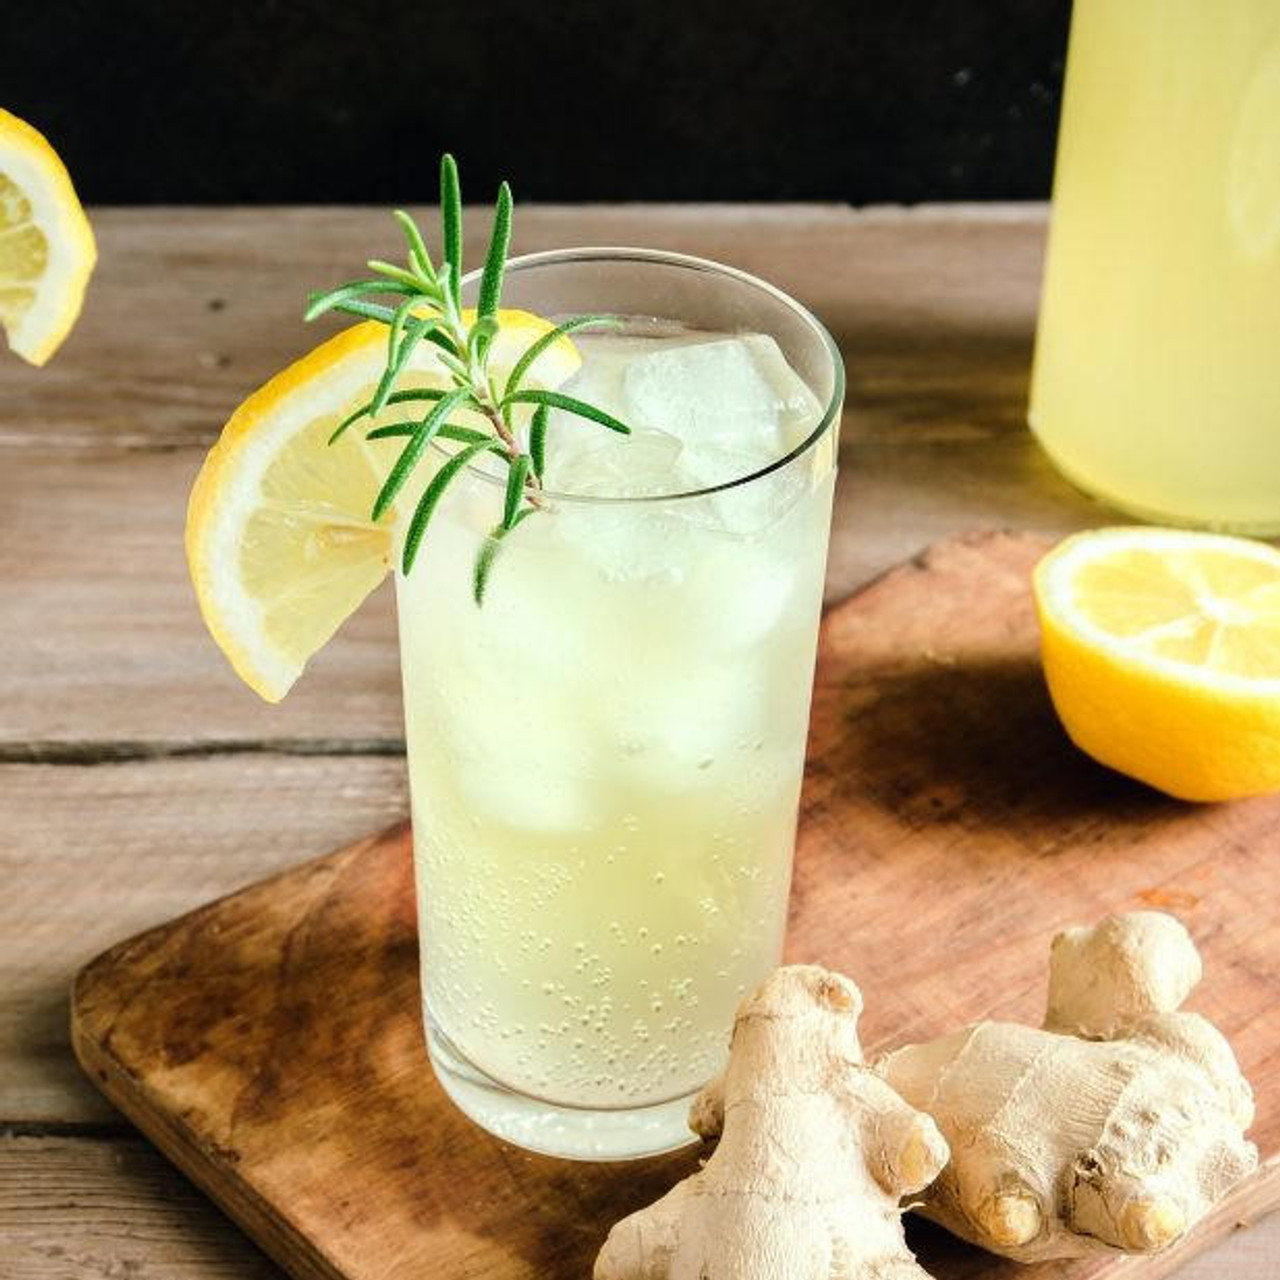  SHOTT Lemon, Ginger, and Honey Real Fruit Flavoring Syrup - 1 Liter Bottle 